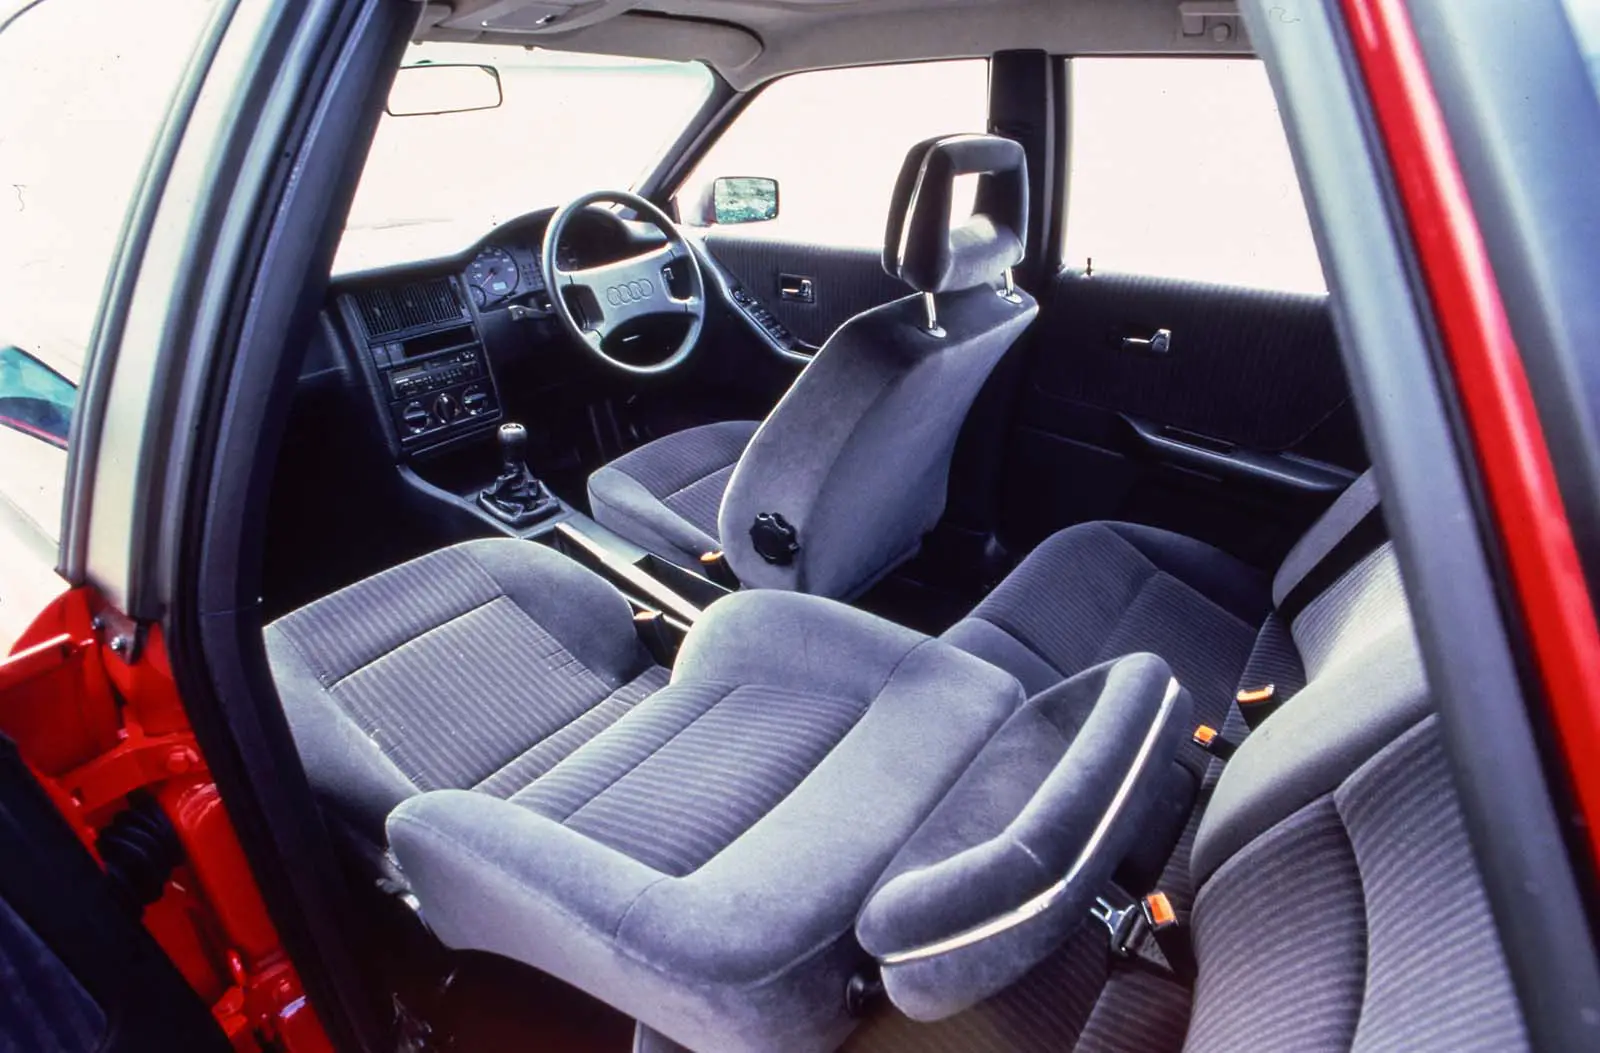 B3 - 1991 1986 80 Jalopy - Audi